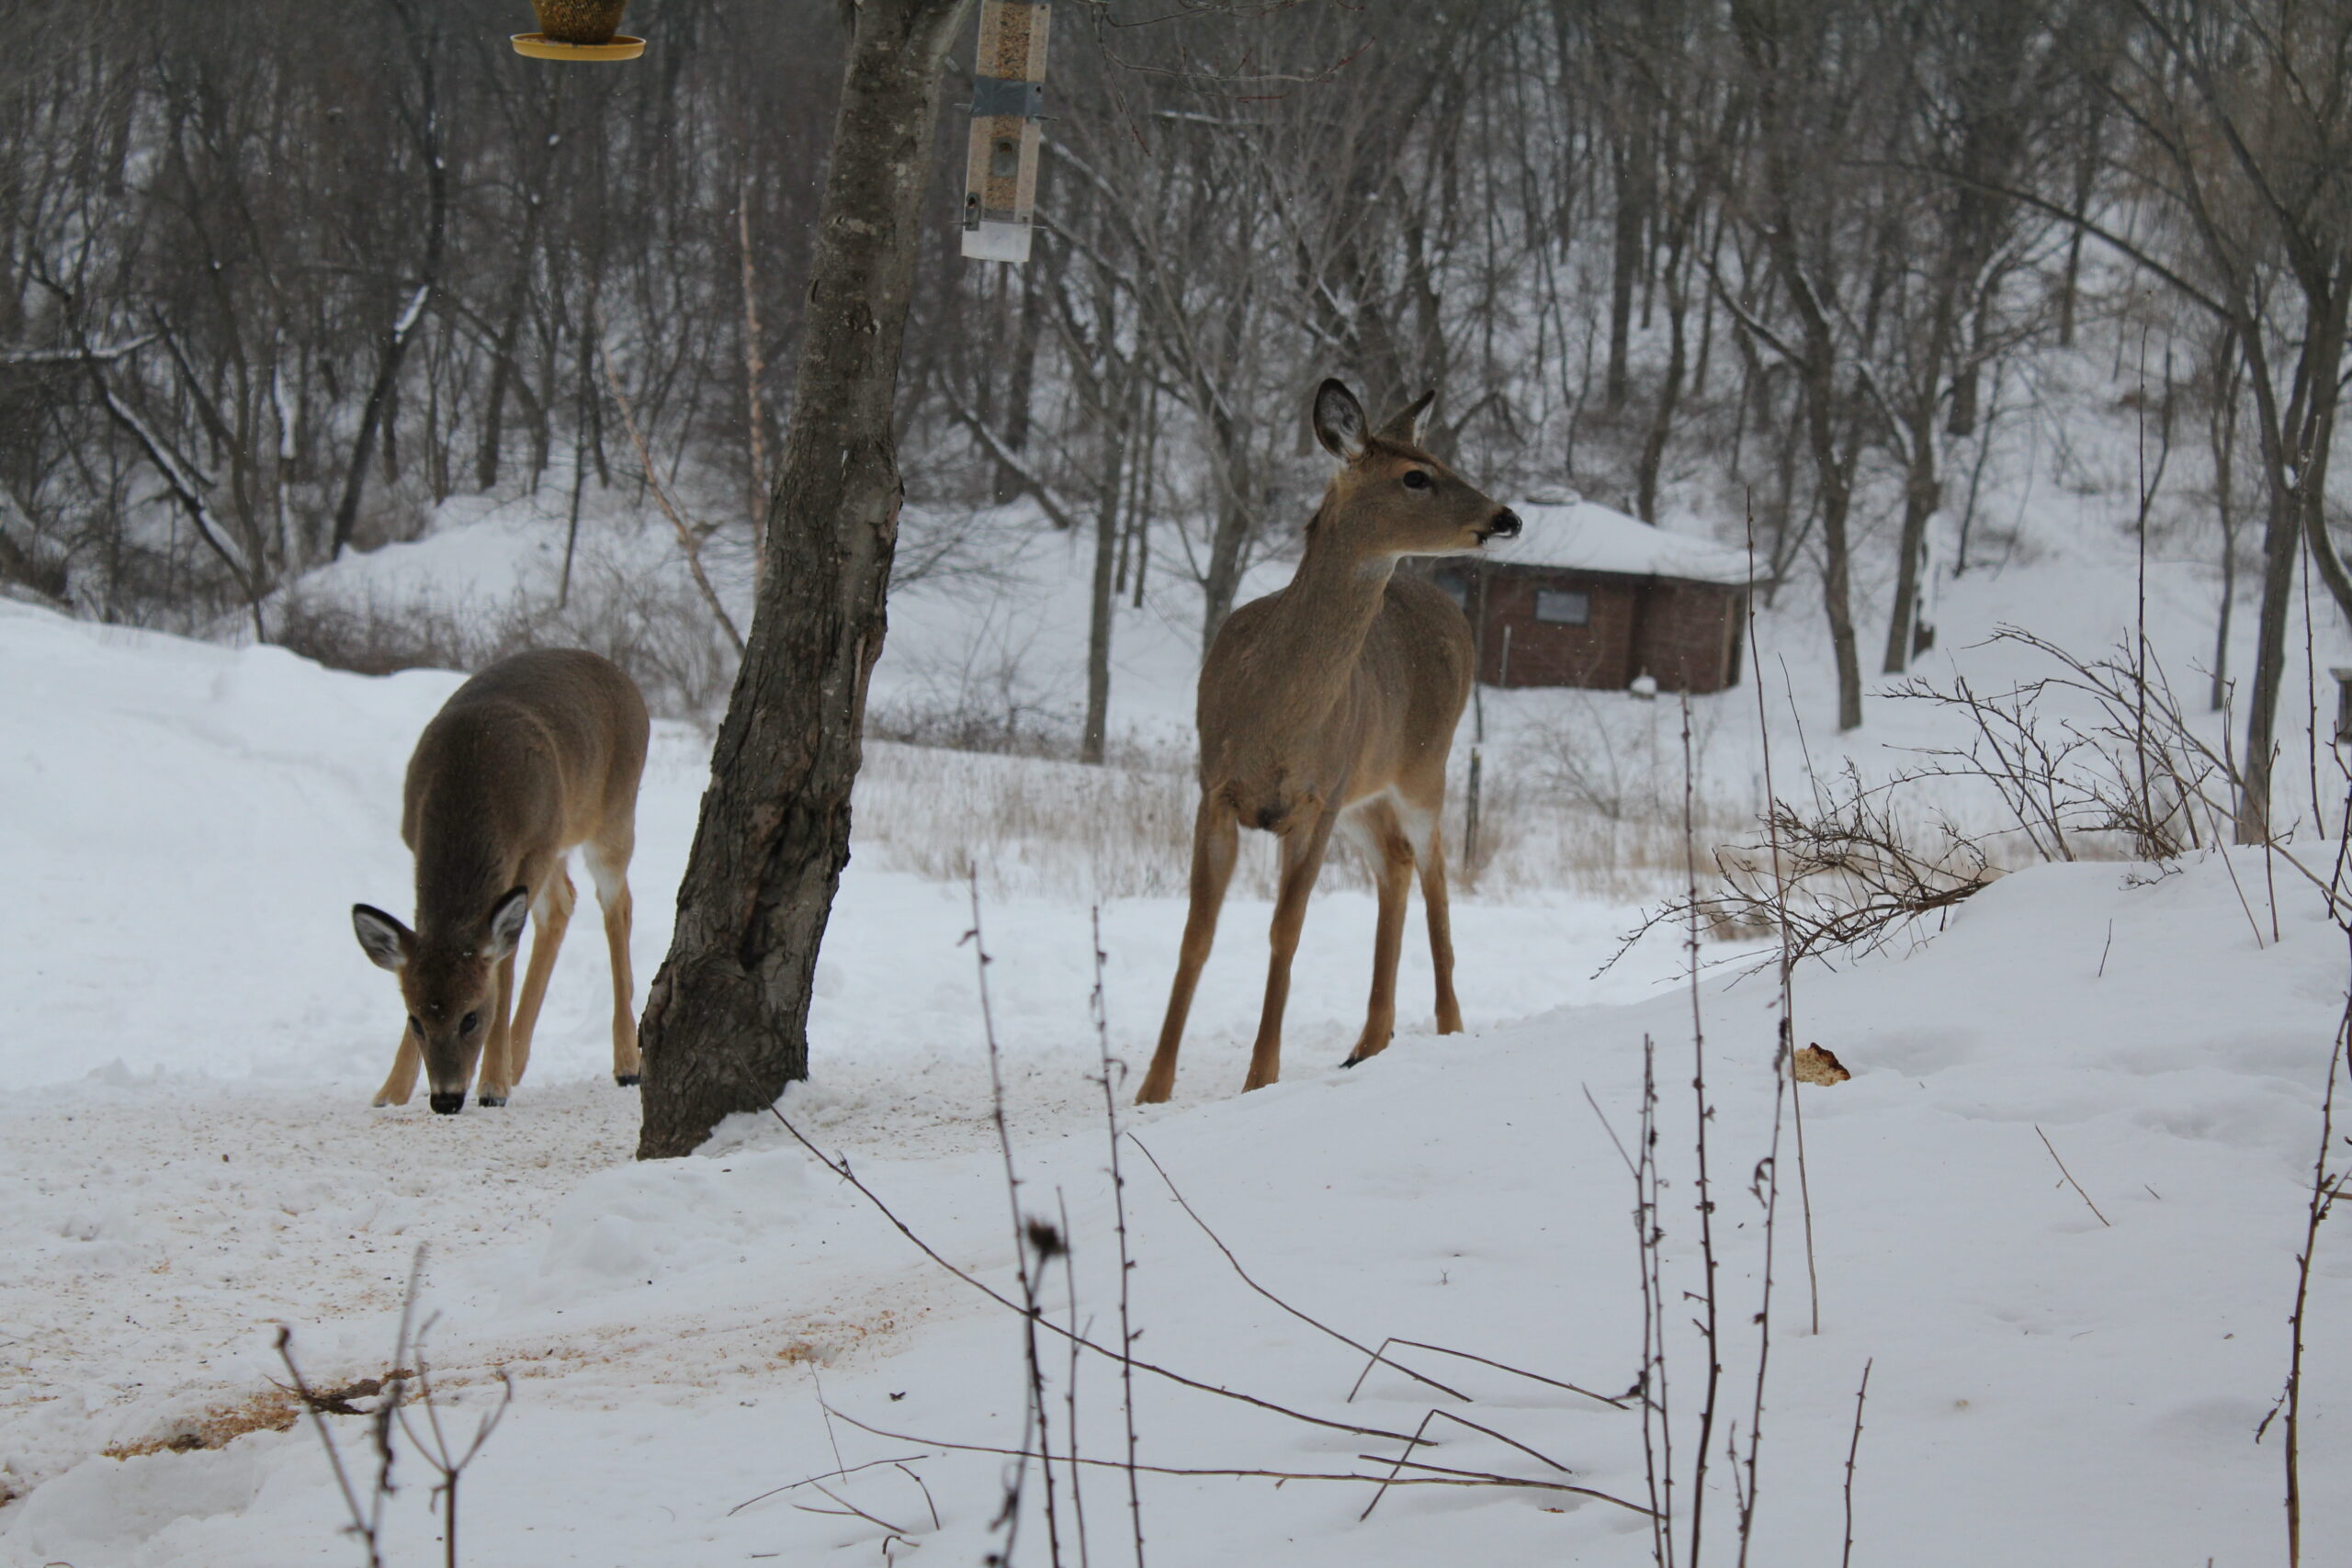 Two deer near birdfeeders in snow.